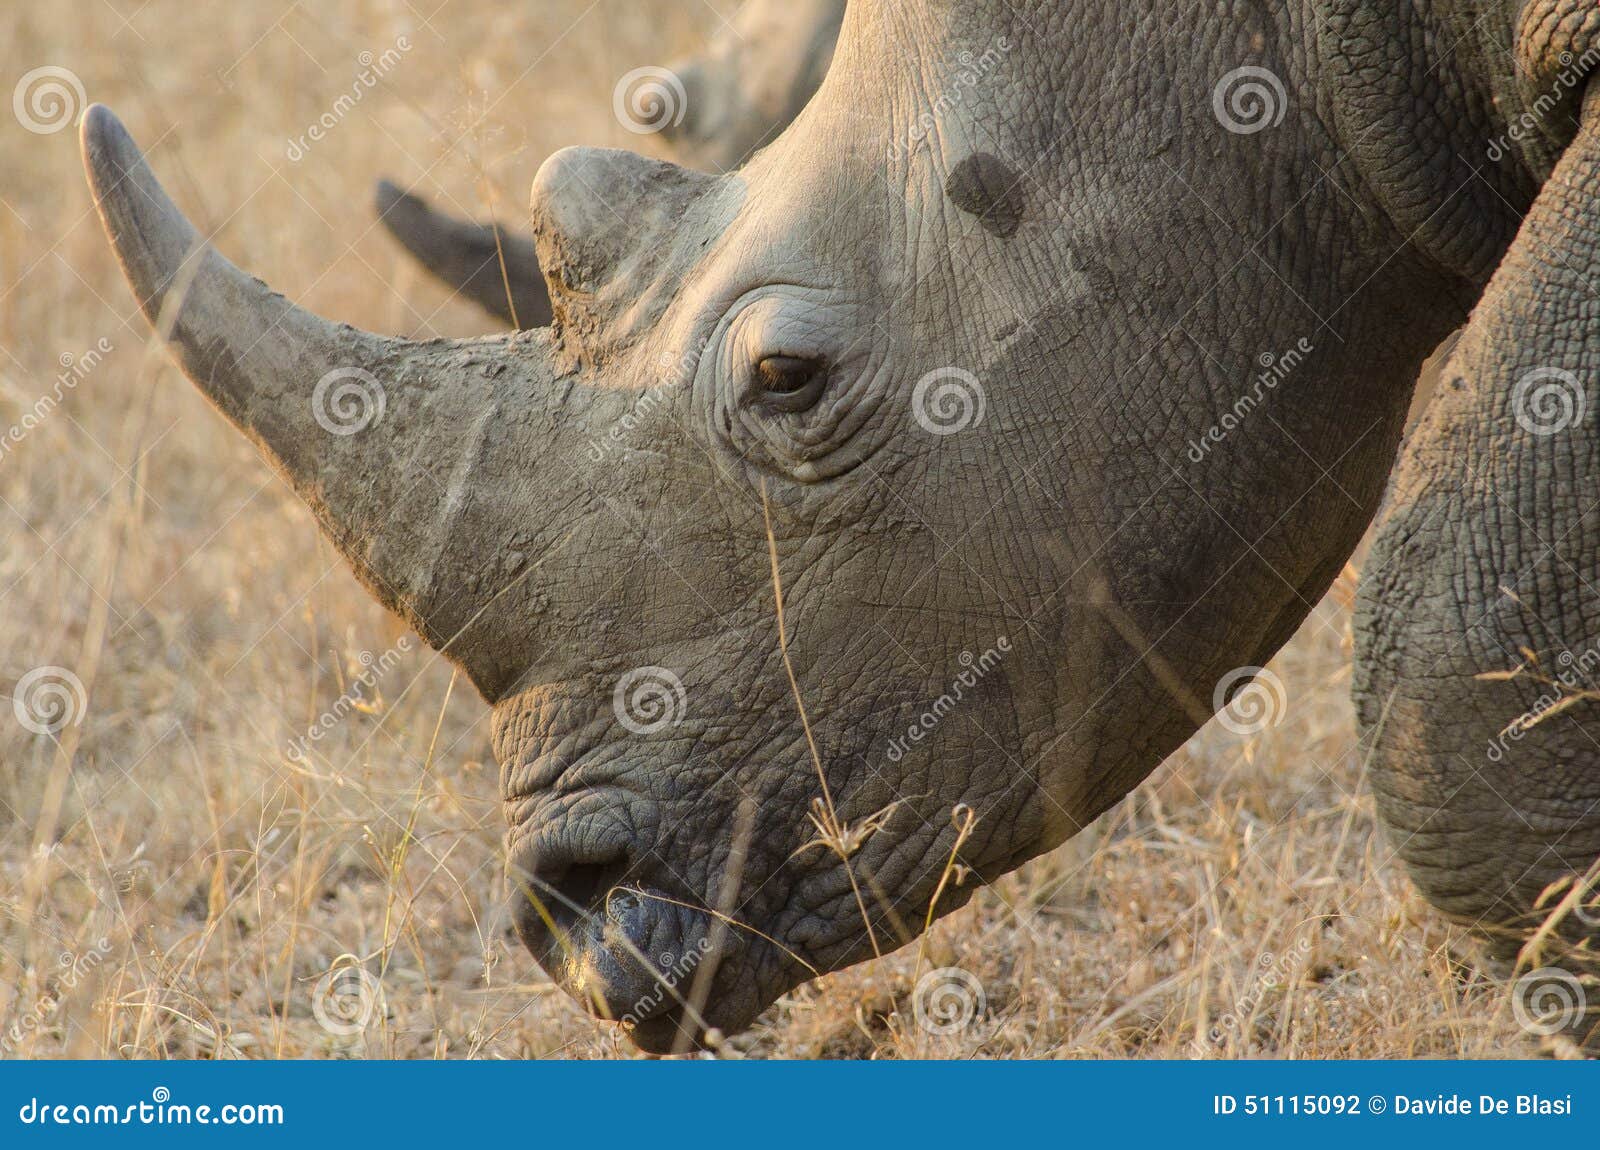 rhinoceros, rhino